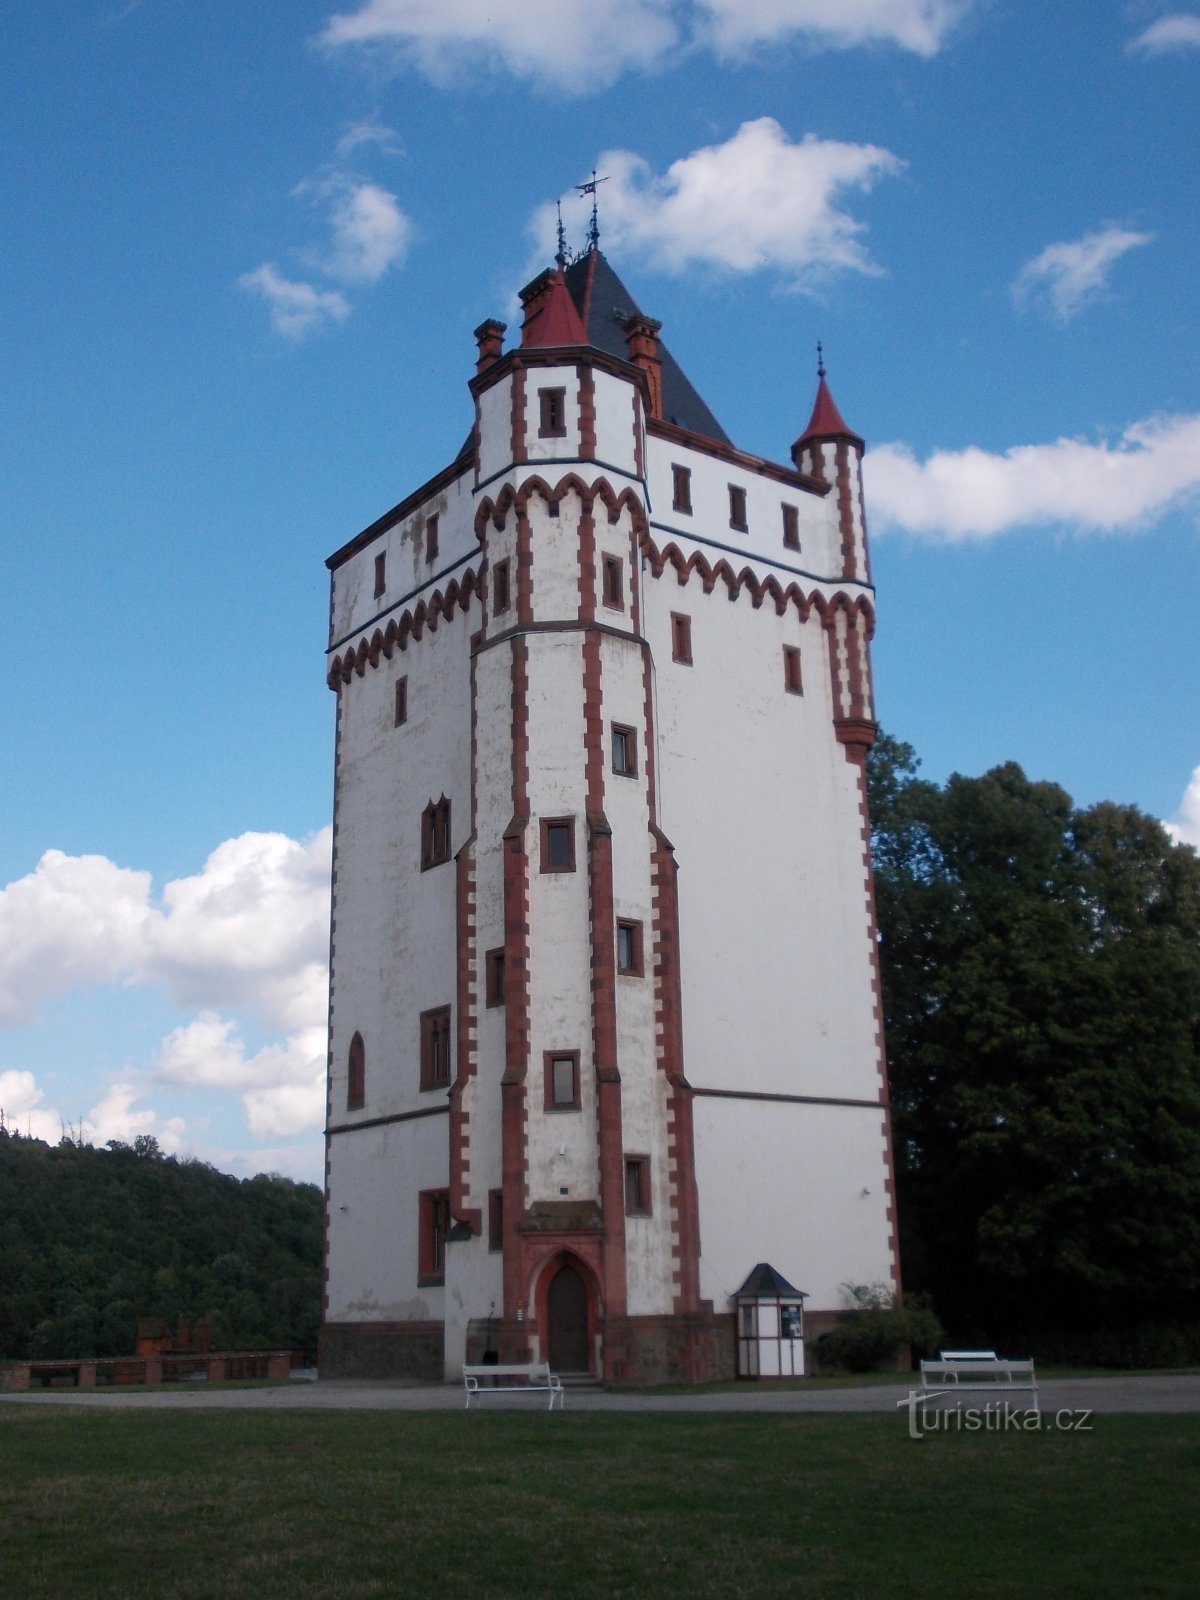 Turm am Beginn des Schlossparks